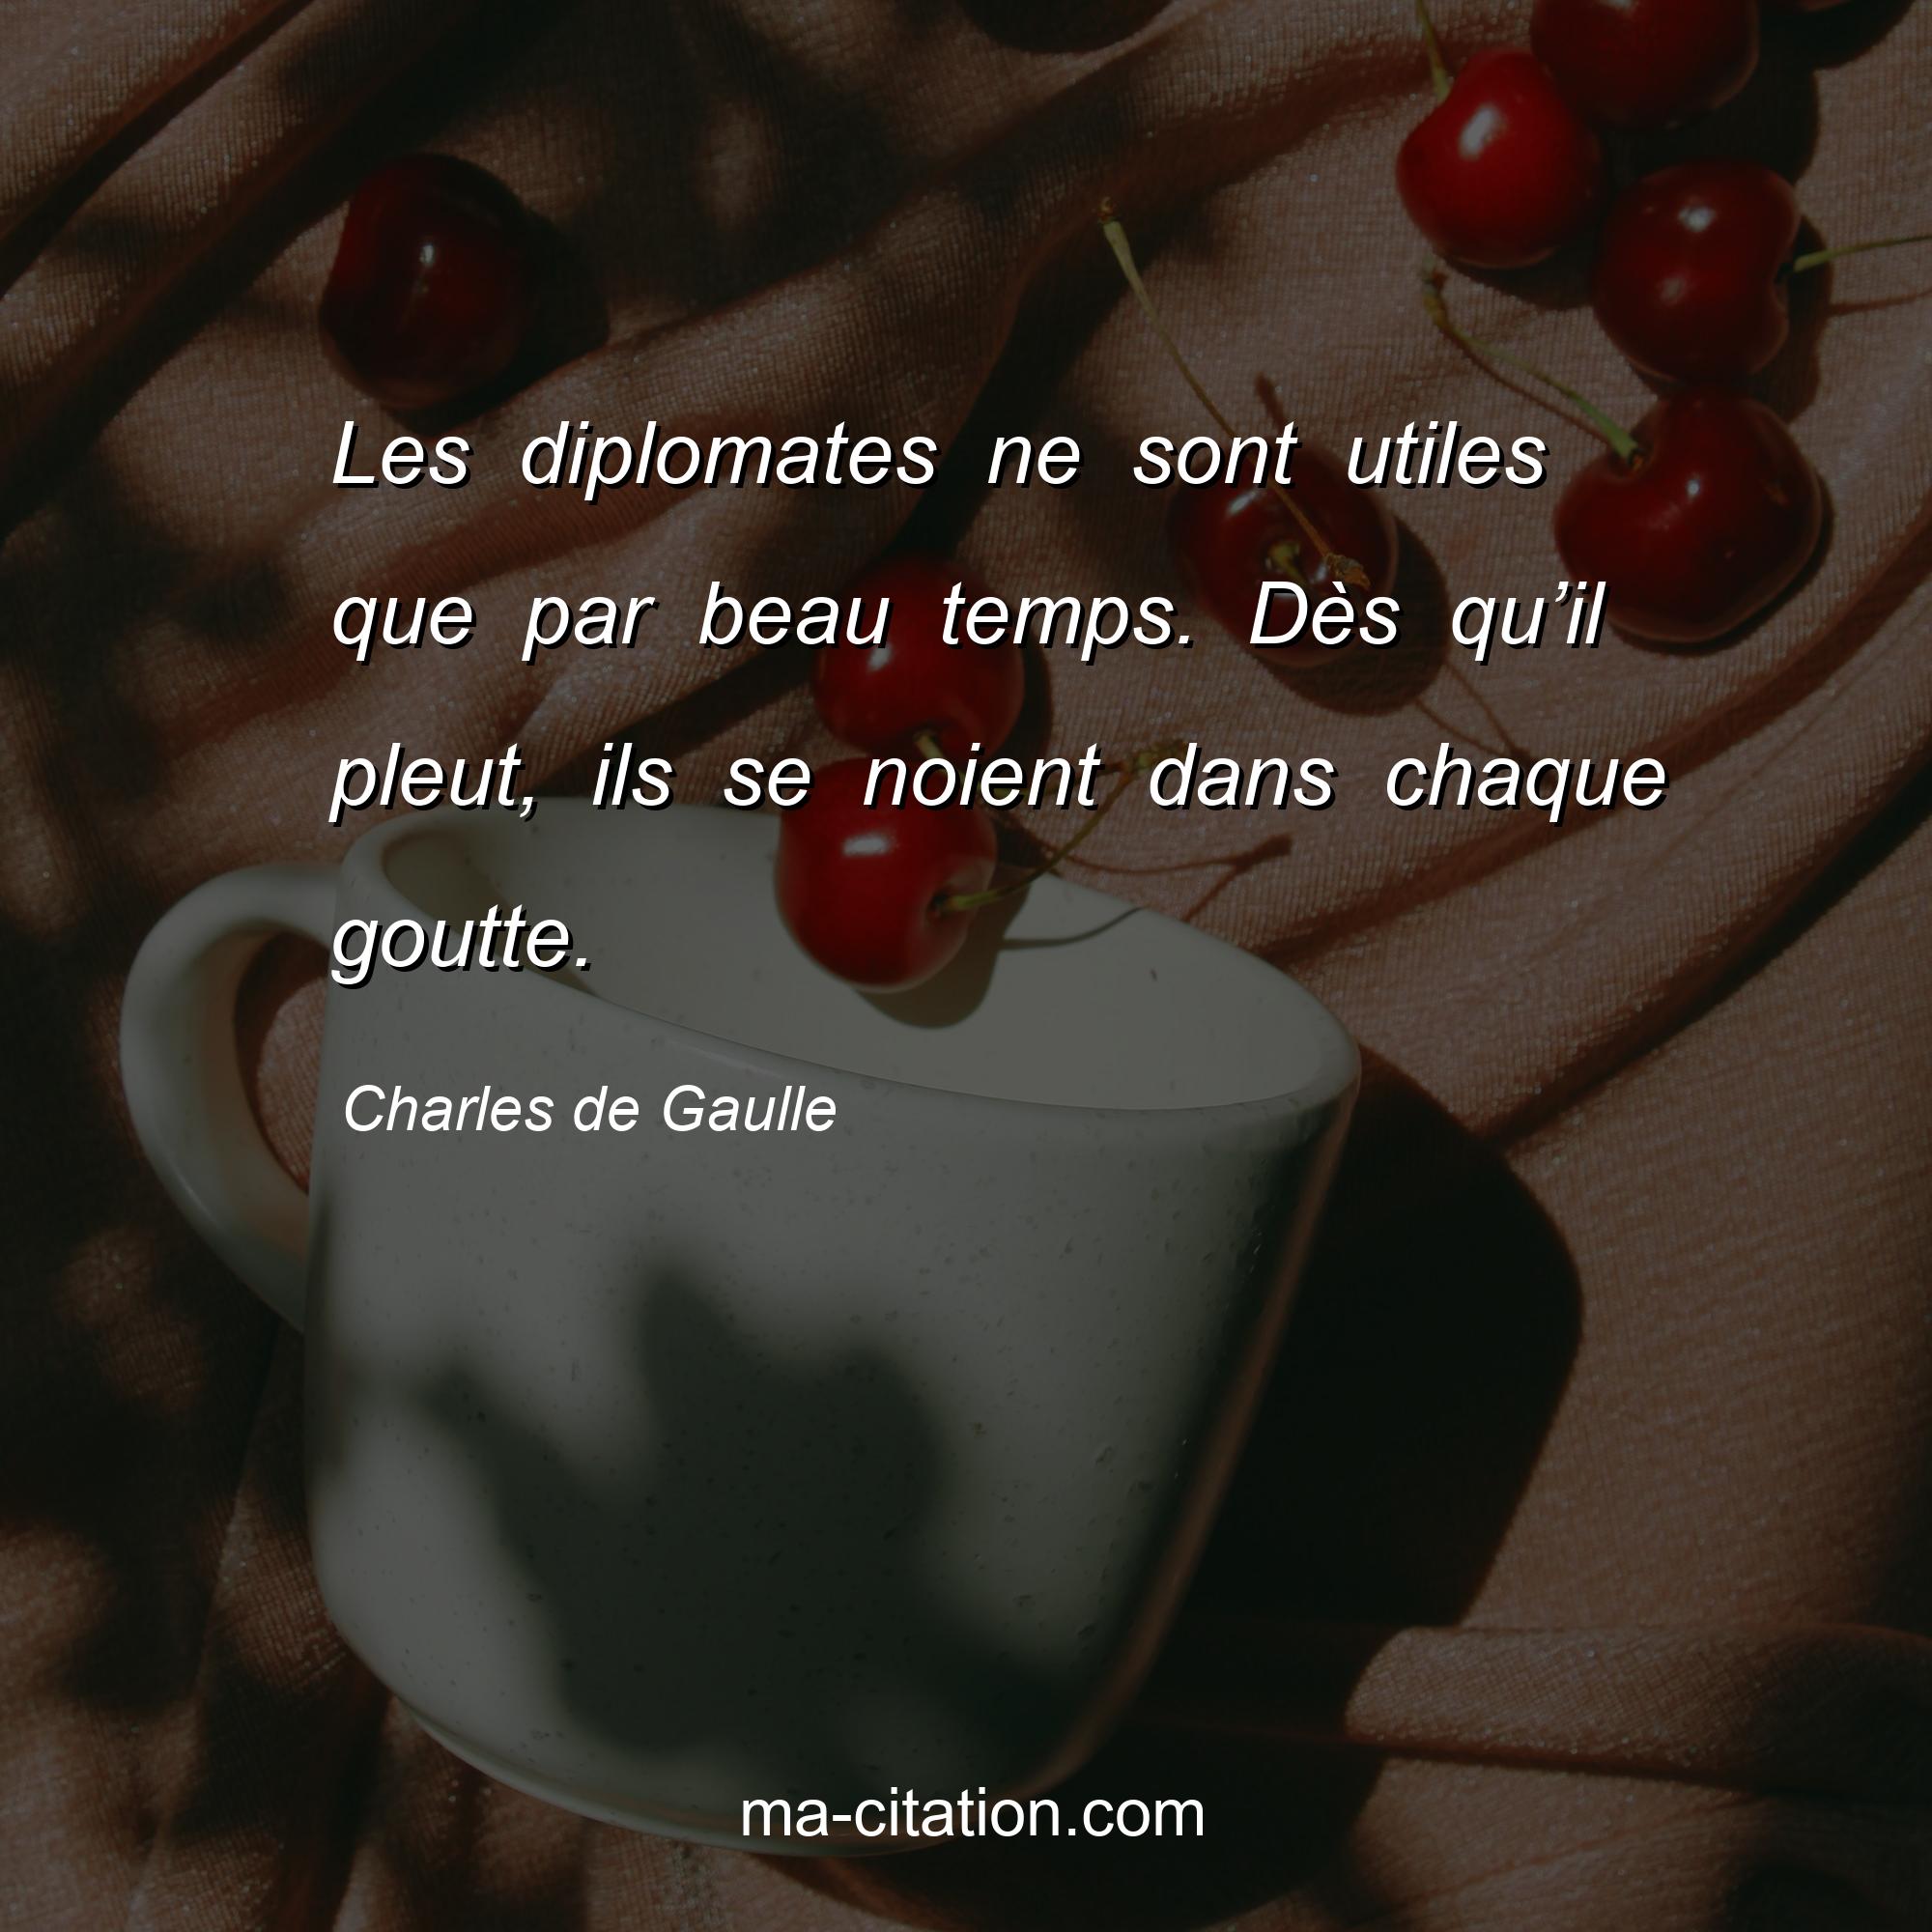 Charles de Gaulle : Les diplomates ne sont utiles que par beau temps. Dès qu’il pleut, ils se noient dans chaque goutte.